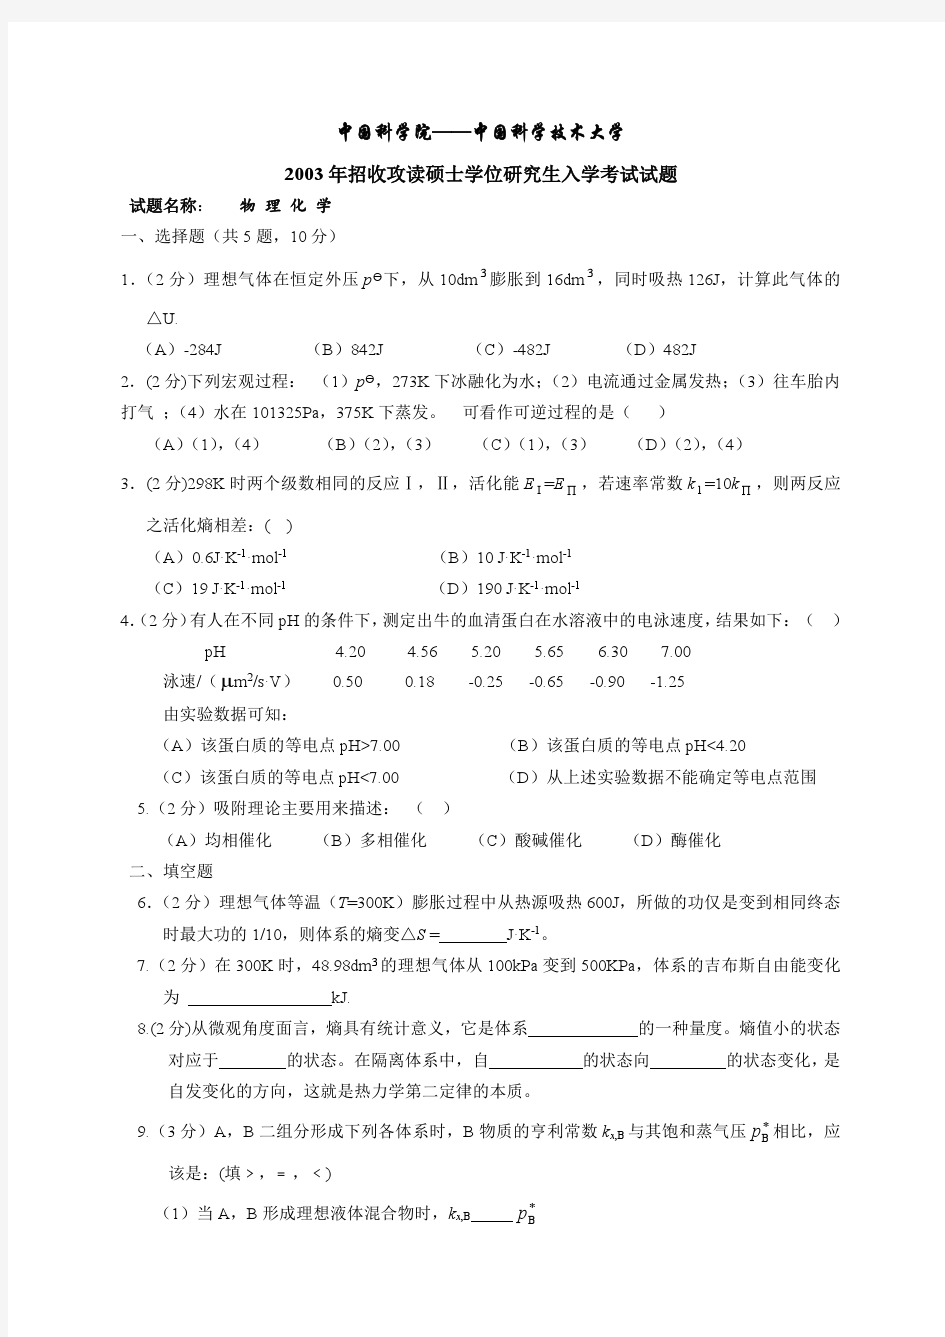 中国科技大学2003年考研物理化学试题及答案(文字版)